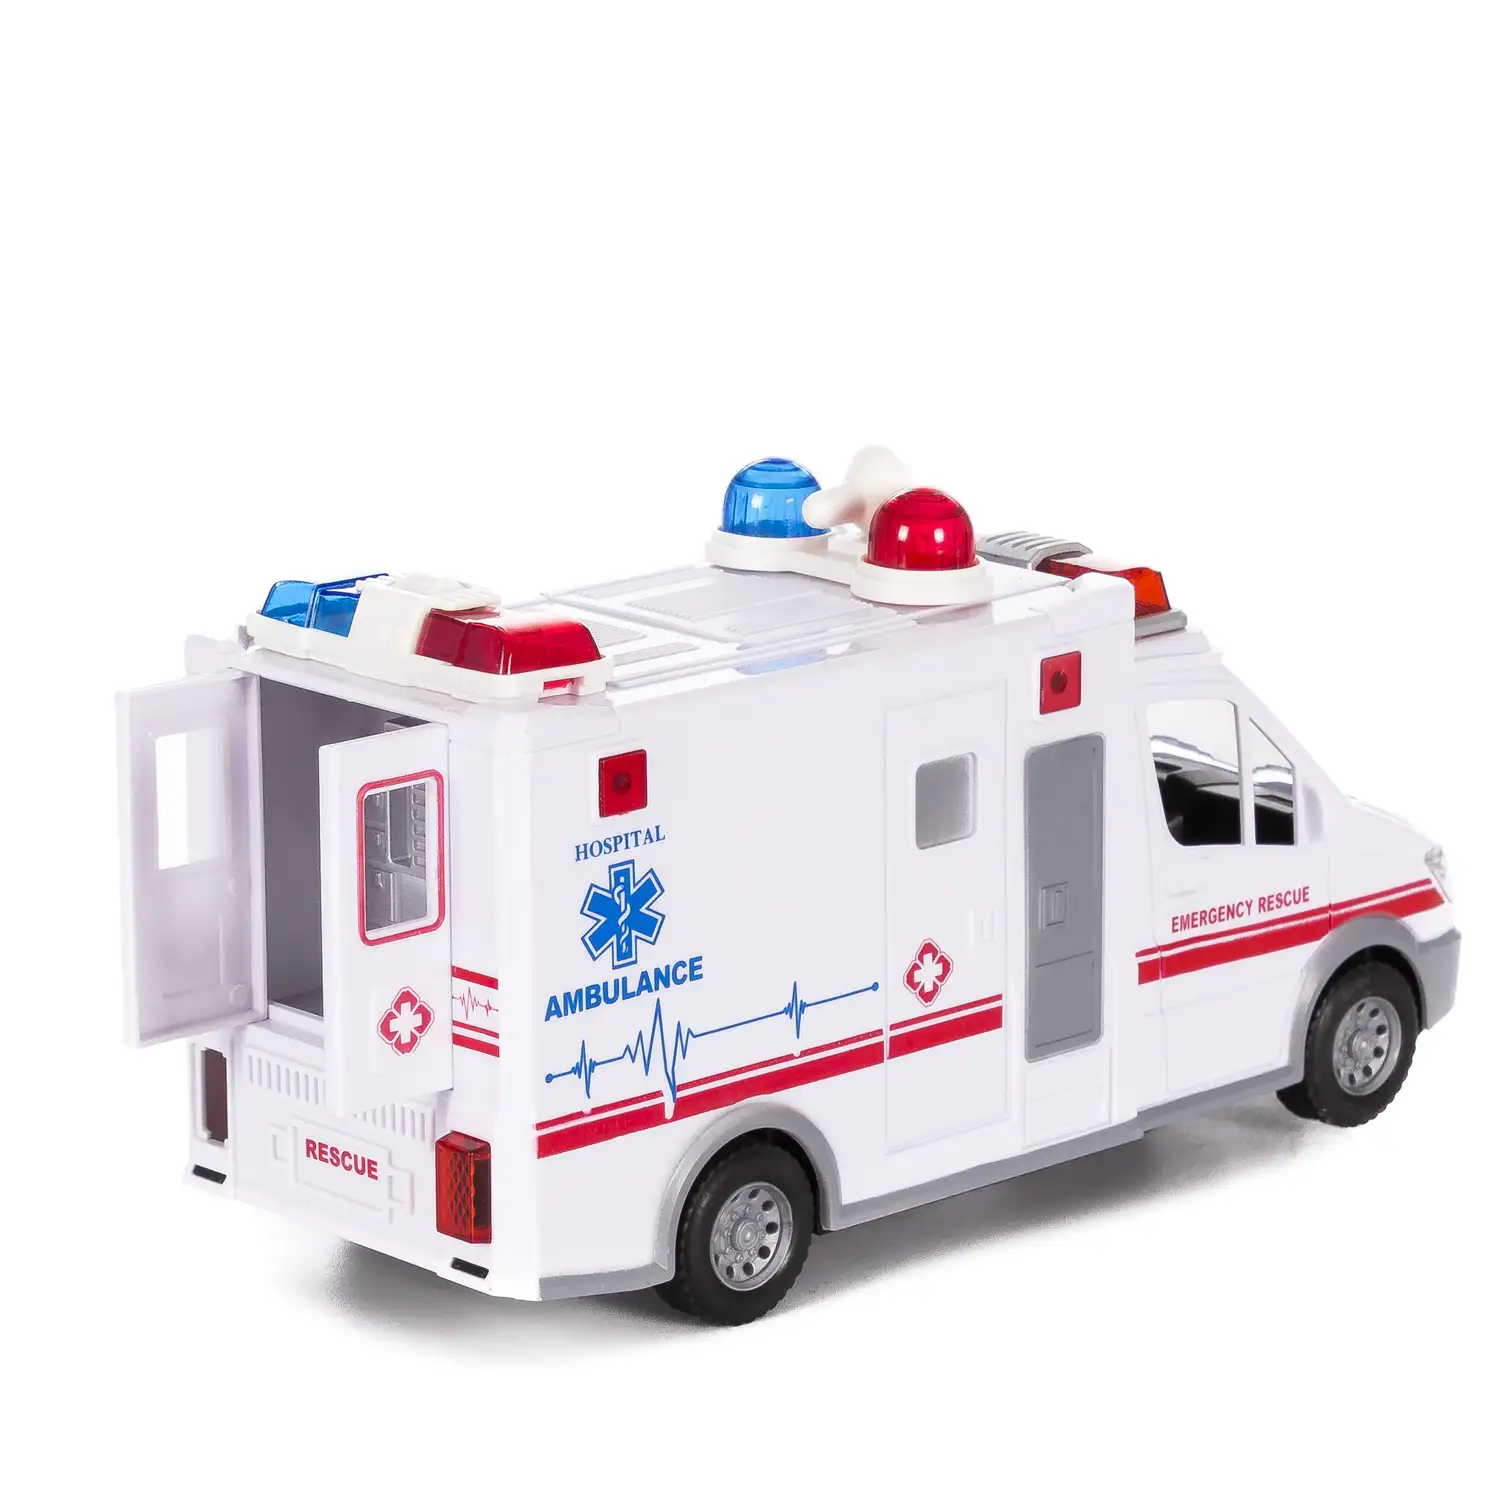 Furgoneta ambulancia con luces 3D y sonido. Modo automático de funcionamiento 360°.